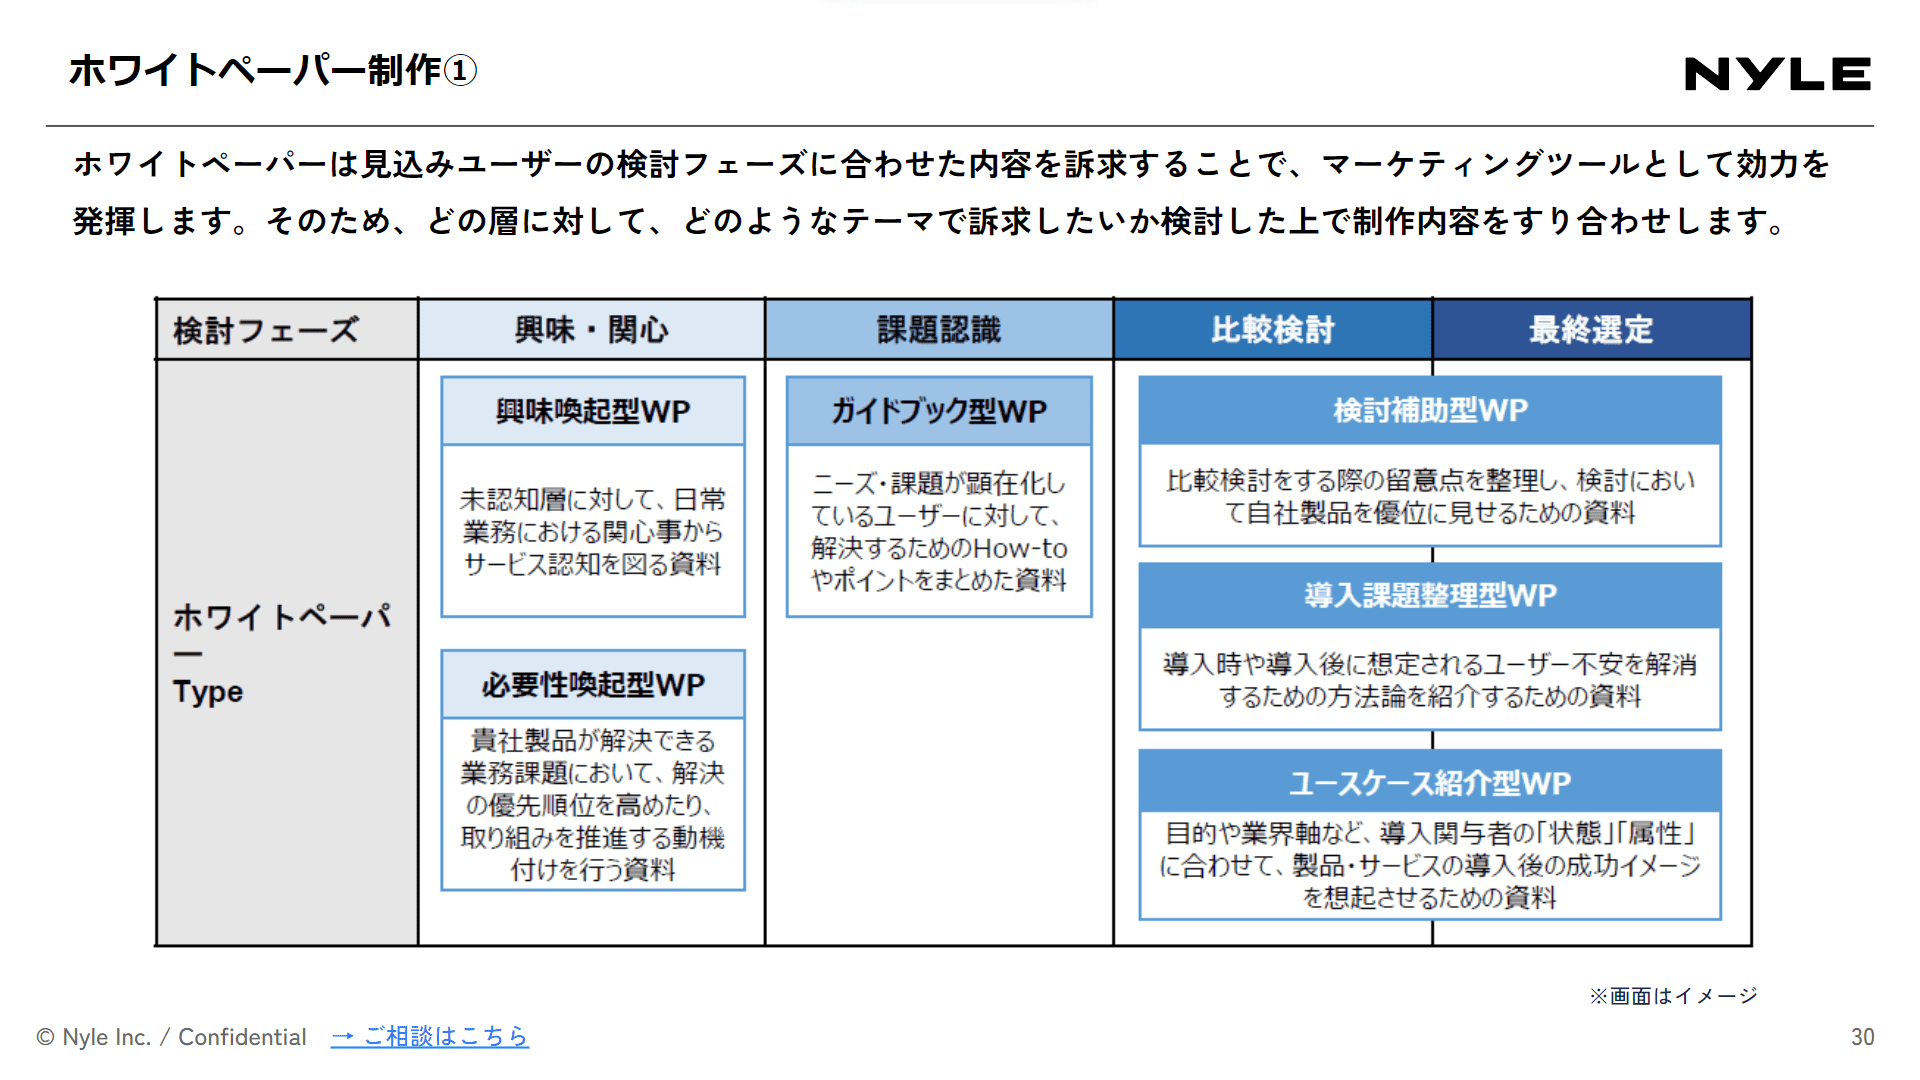 コンテンツ・記事制作代行サービス紹介資料スライドサンプル2